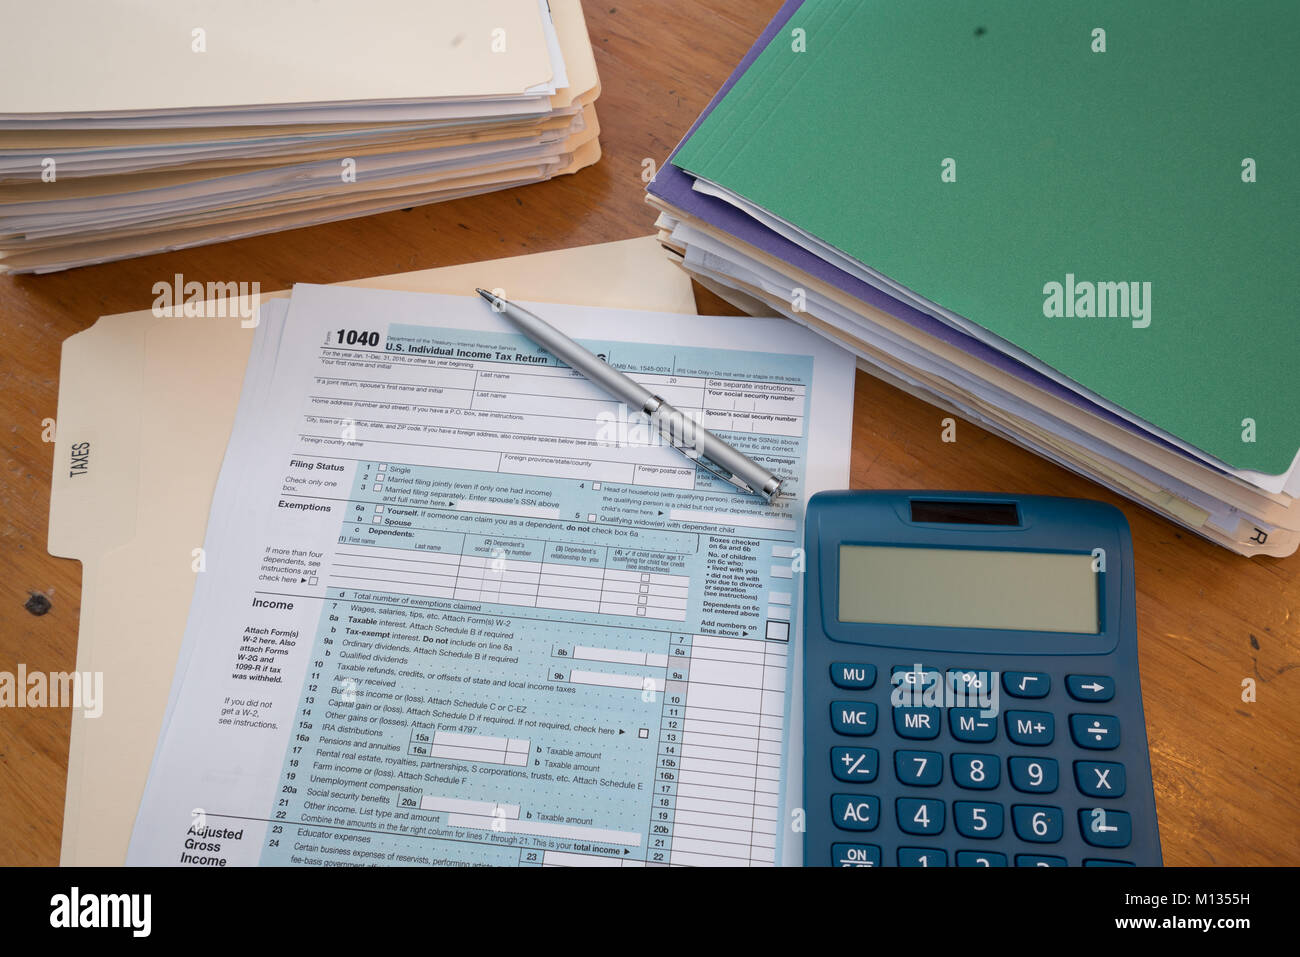 IRS Tax Form mit steuerlichen Unterlagen in Ordnern, Taschenrechner und Kugelschreiber Stockfoto